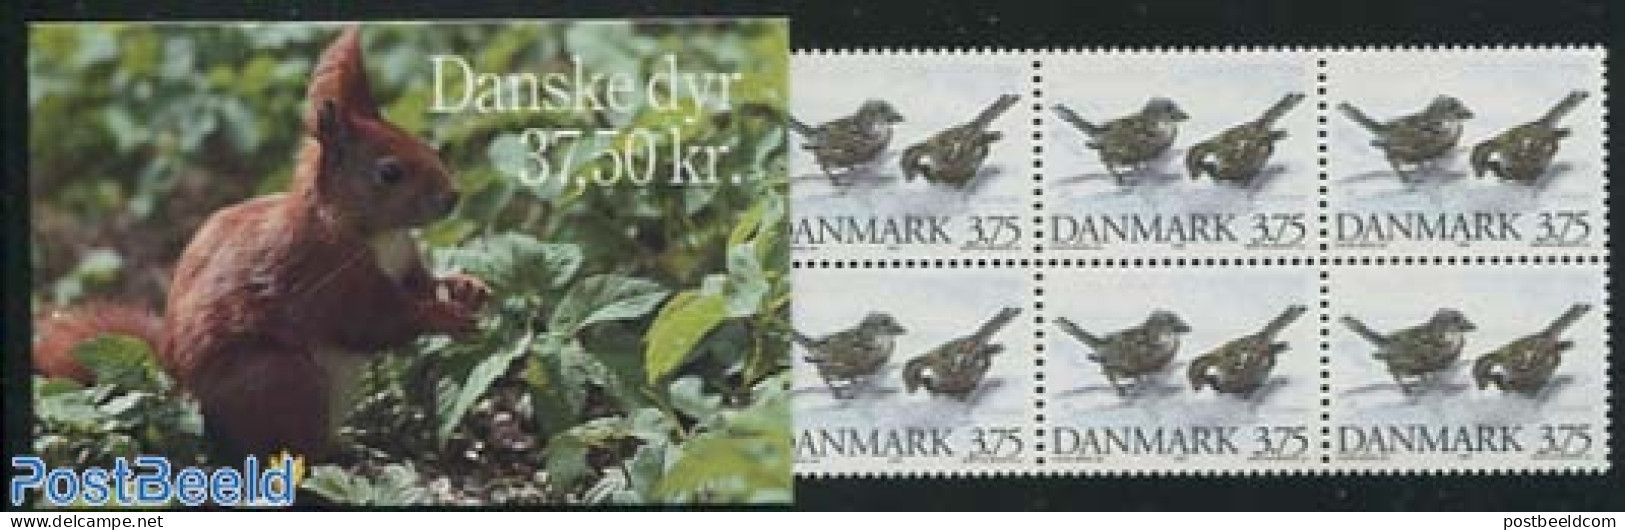 Denmark 1994 Birds Booklet, Mint NH, Nature - Birds - Stamp Booklets - Ungebraucht